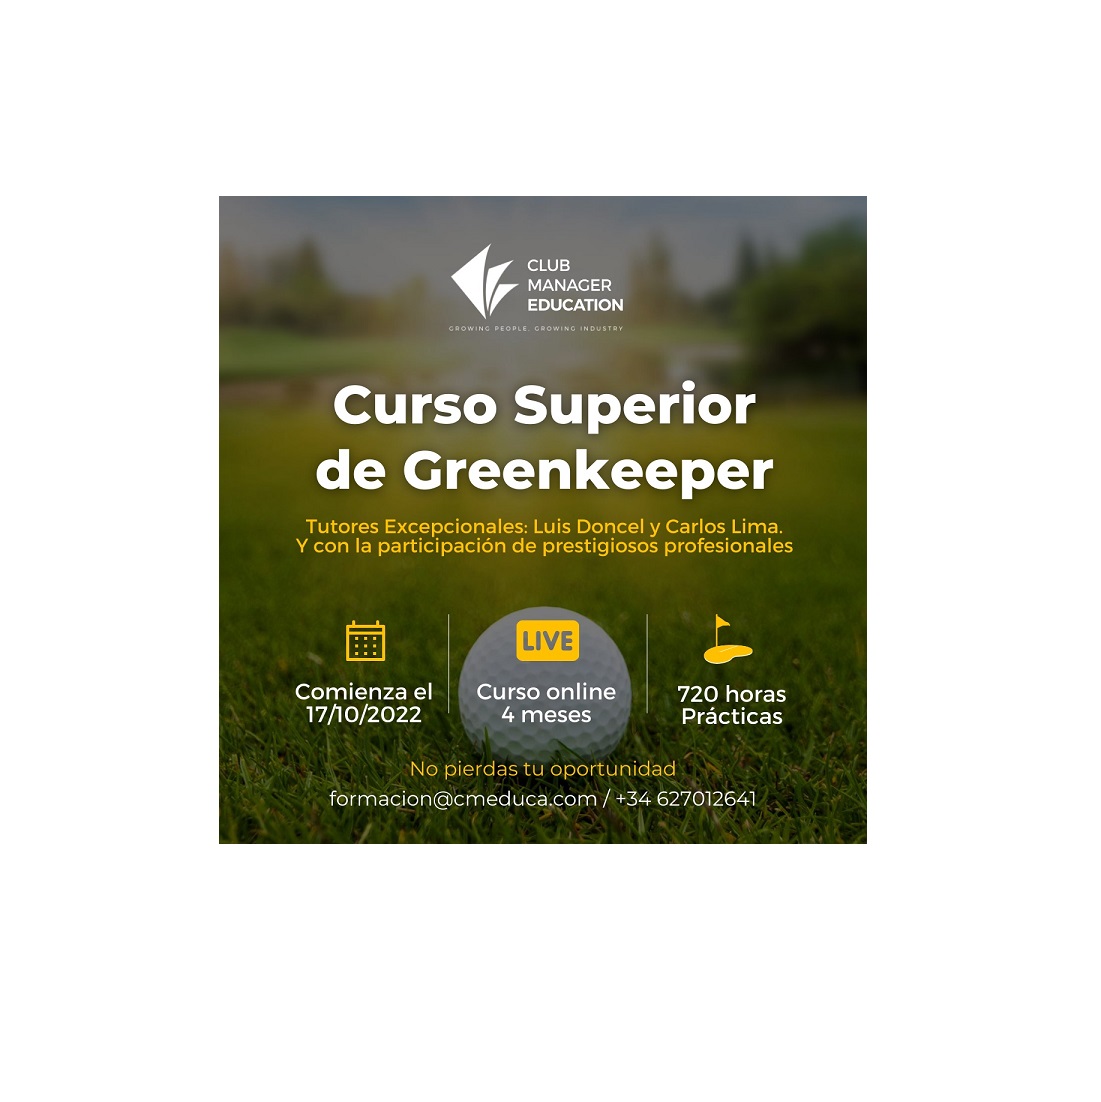 CURSO SUPERIOR DE GREENKEEPER DE CLUB MANAGER EDUCATION